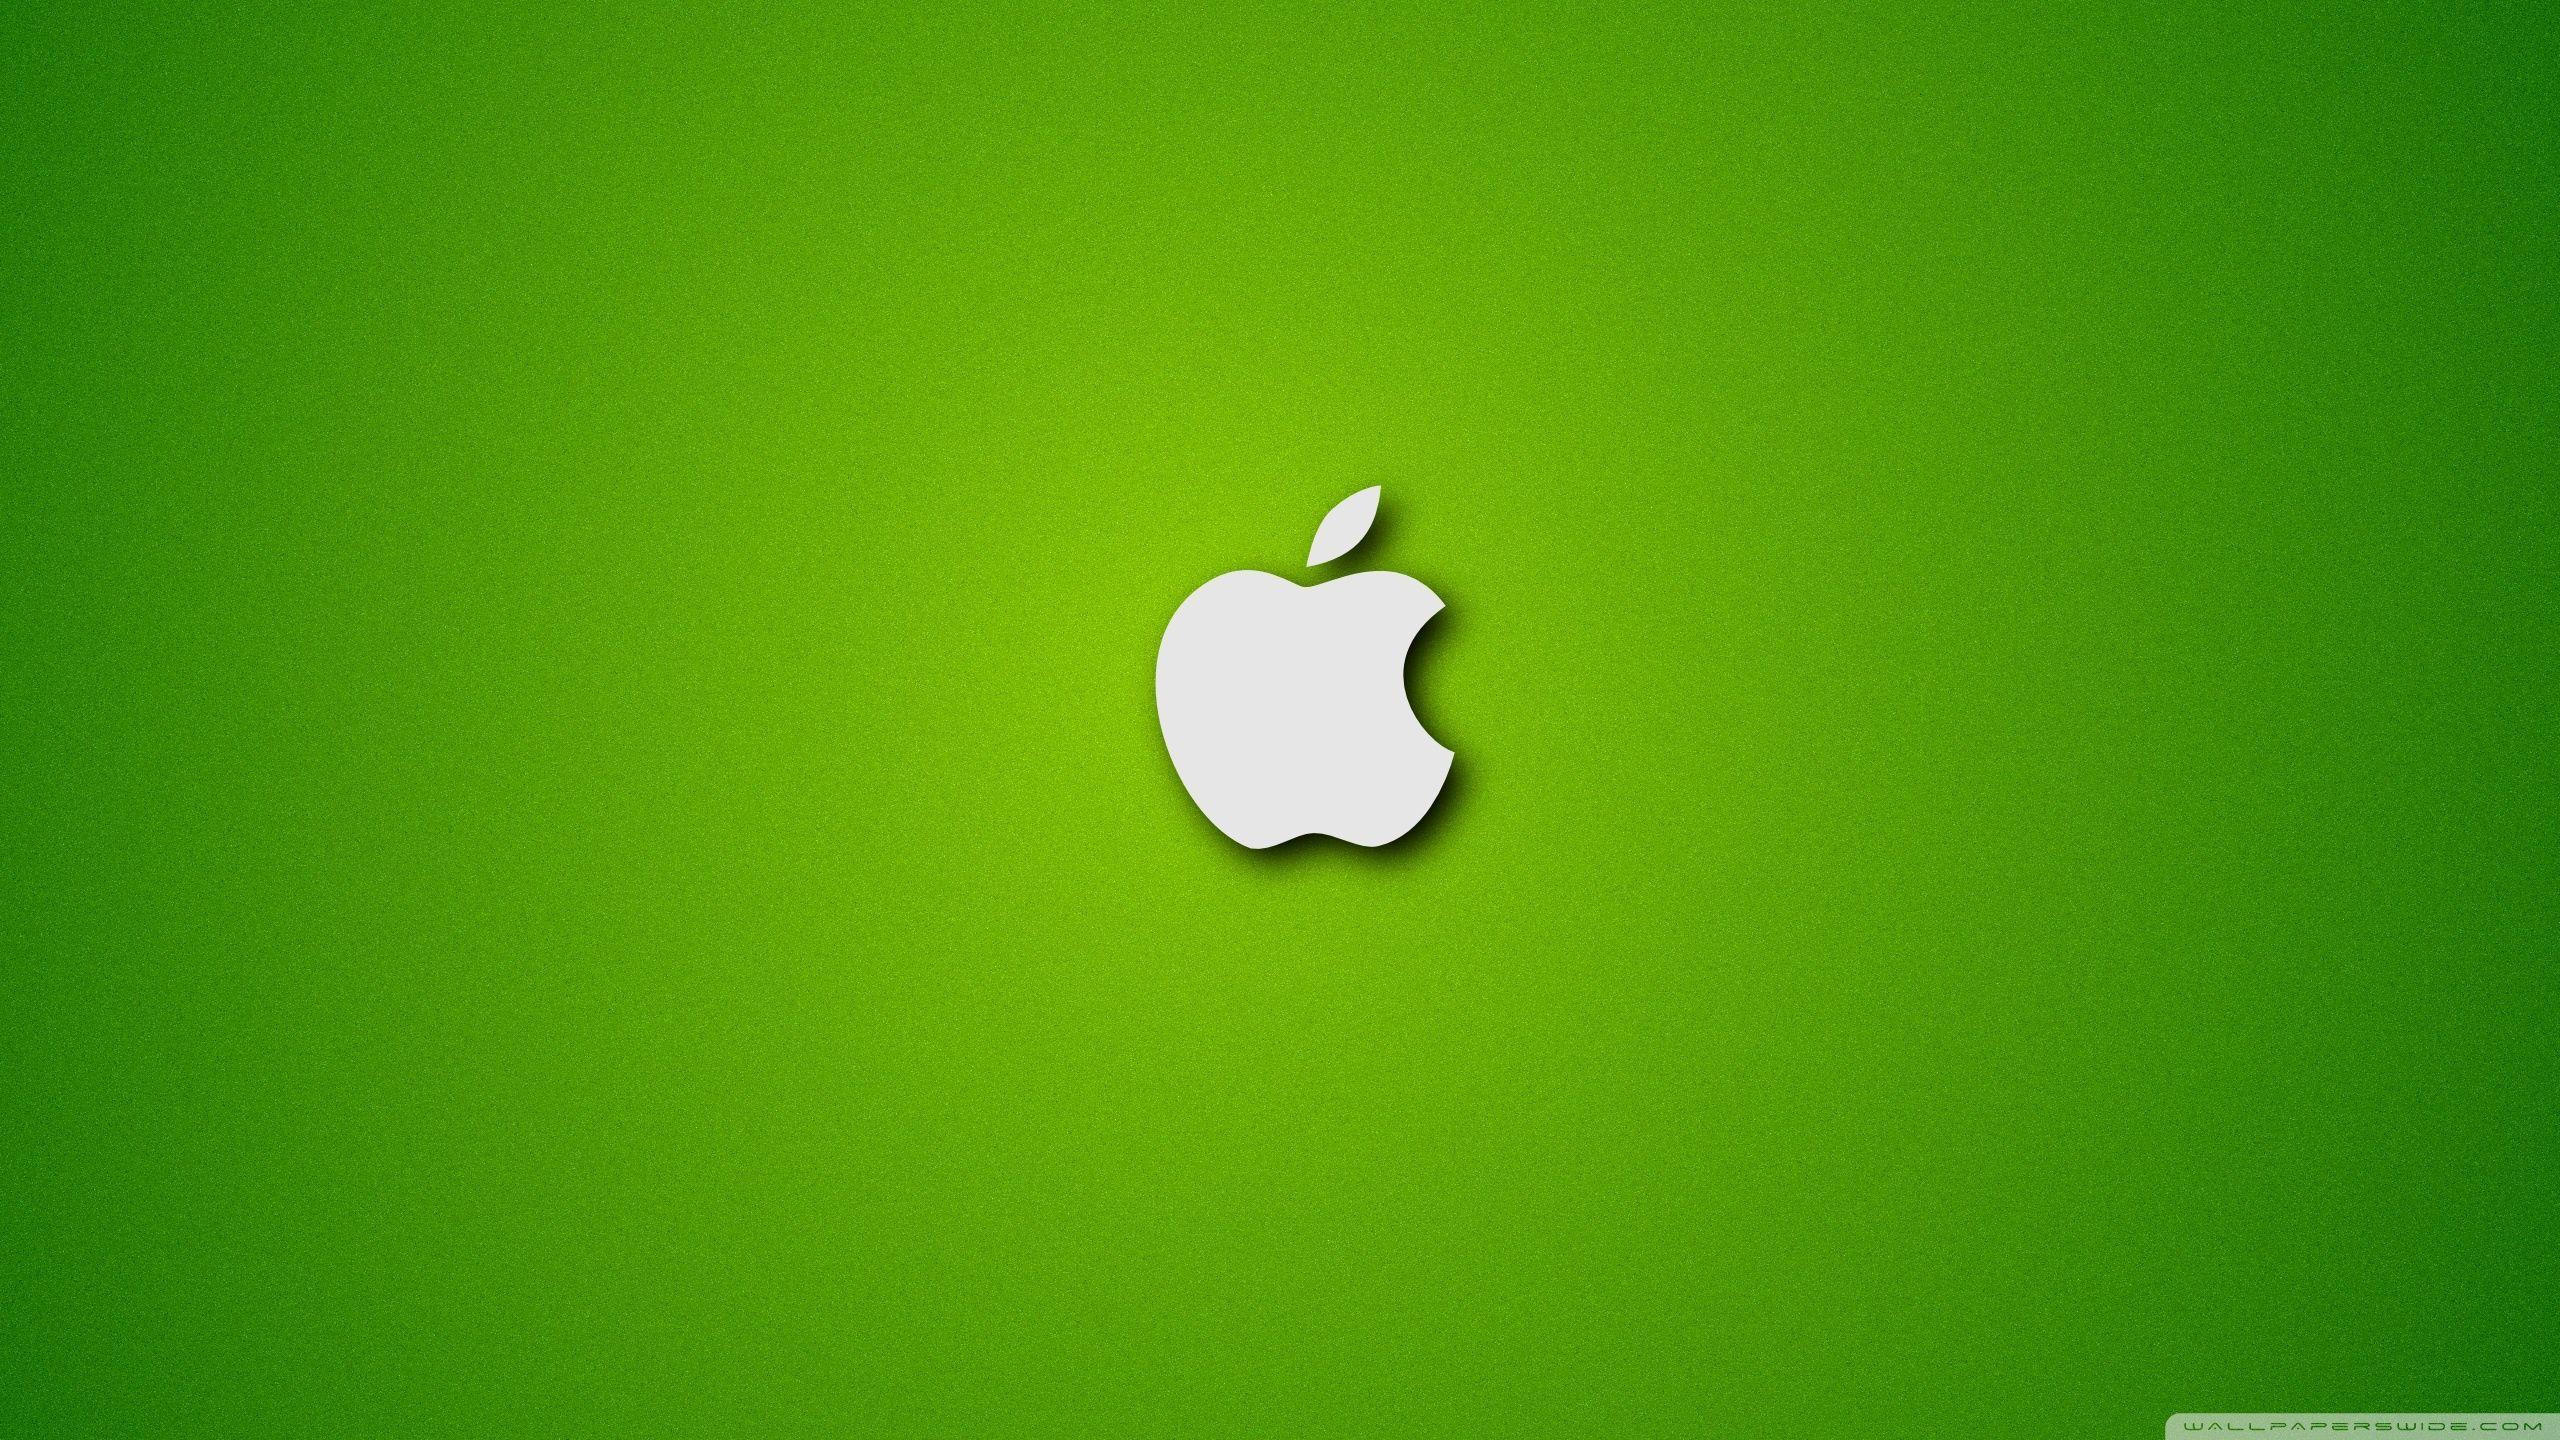 Bức ảnh về chiếc MacBook xanh lá cây sẽ khiến bạn muốn lắp tức thời vào túi xách của mình. Với thiết kế đẹp mắt và tính năng vượt trội, MacBook sẽ giúp bạn làm việc và giải trí vô cùng tuyệt vời. Hãy cùng tìm hiểu thêm về chiếc MacBook xanh trong hình ảnh nào.